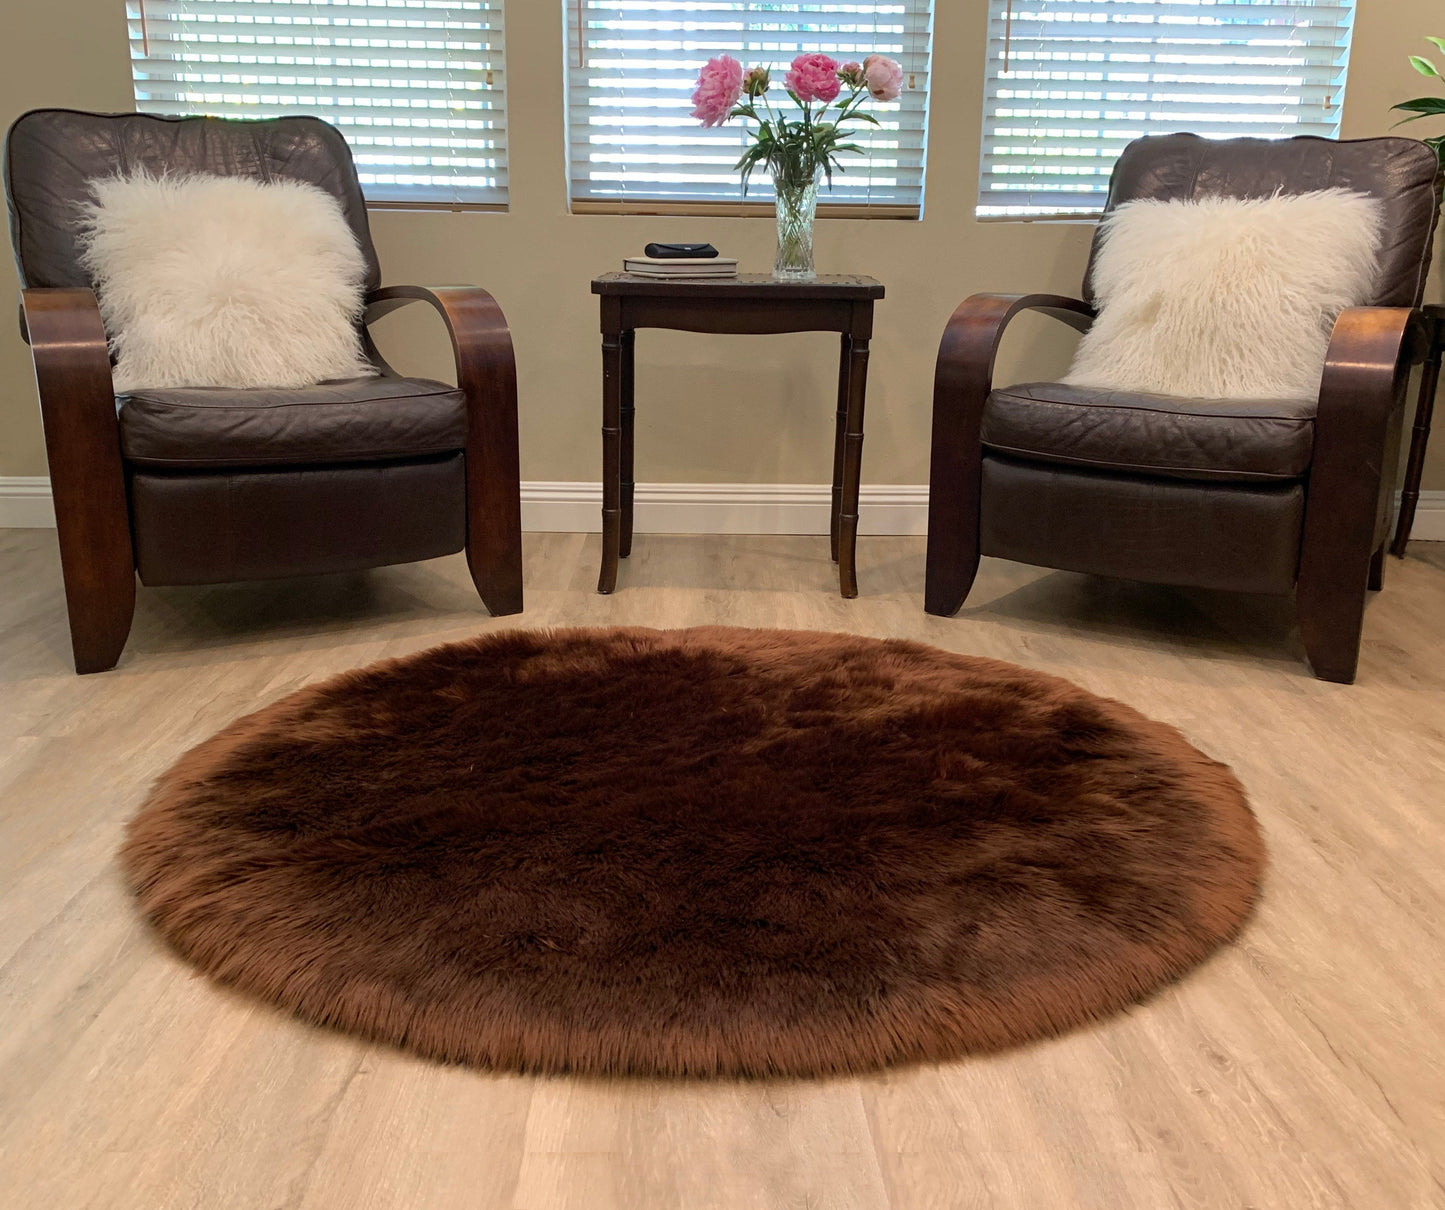 Faux sheepskin rug Oval Shaped 2'6''X6' (75cm x 180cm)